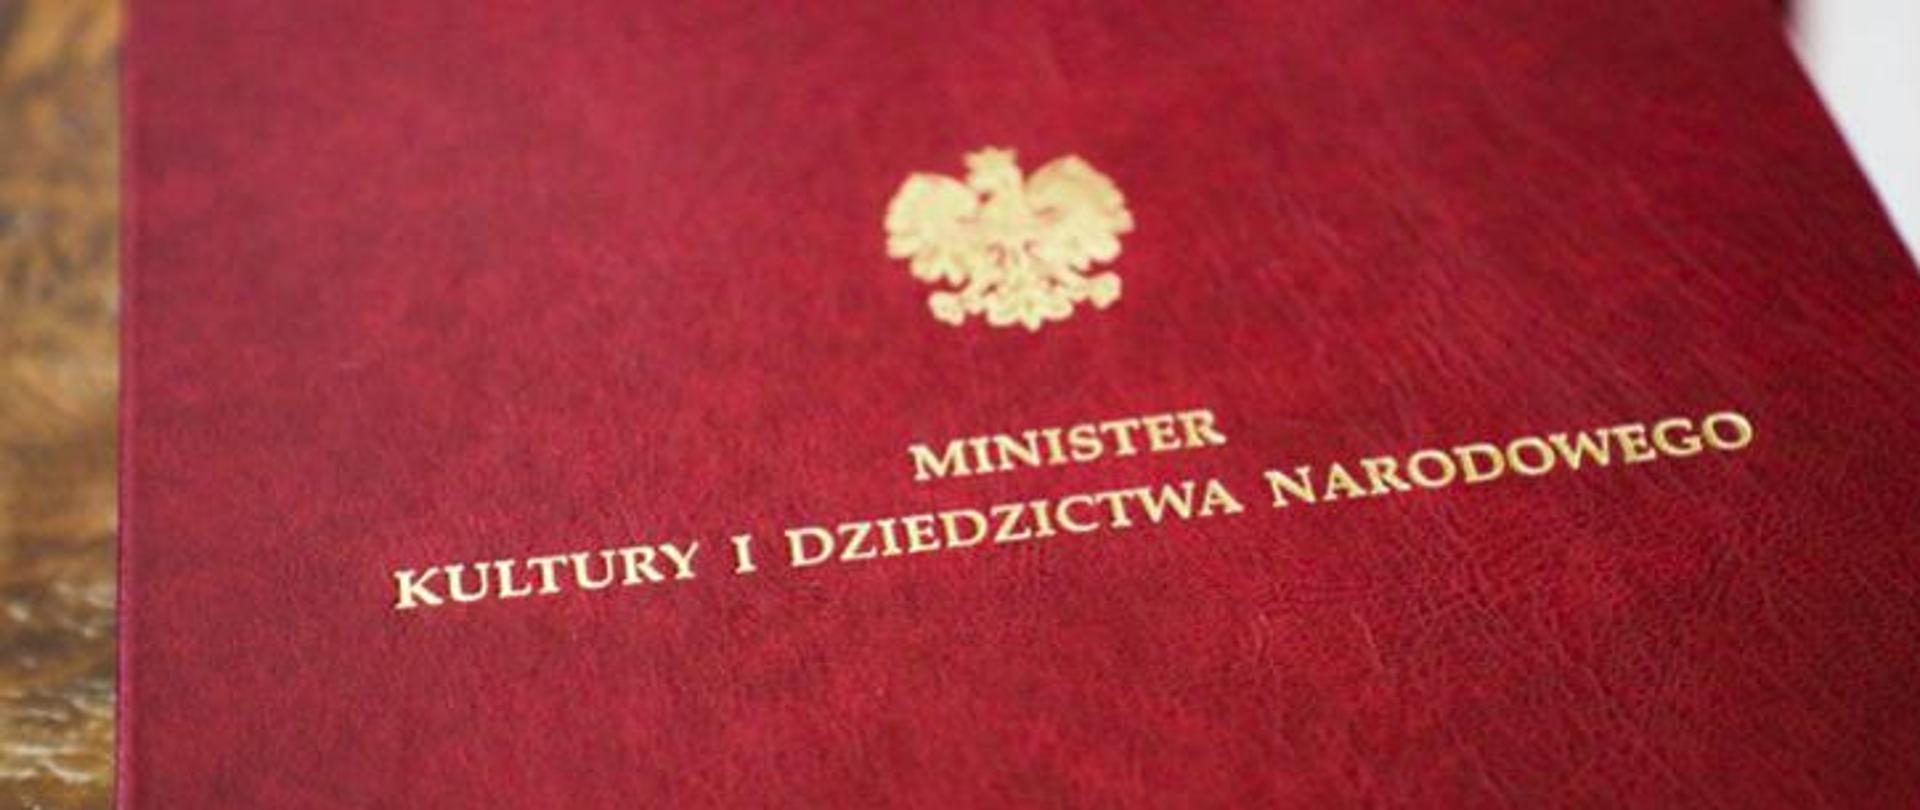 Teczka z Godłem Polski i napisem MINISTER KULTURY I DZIEDZICTWA NARODOWEGO